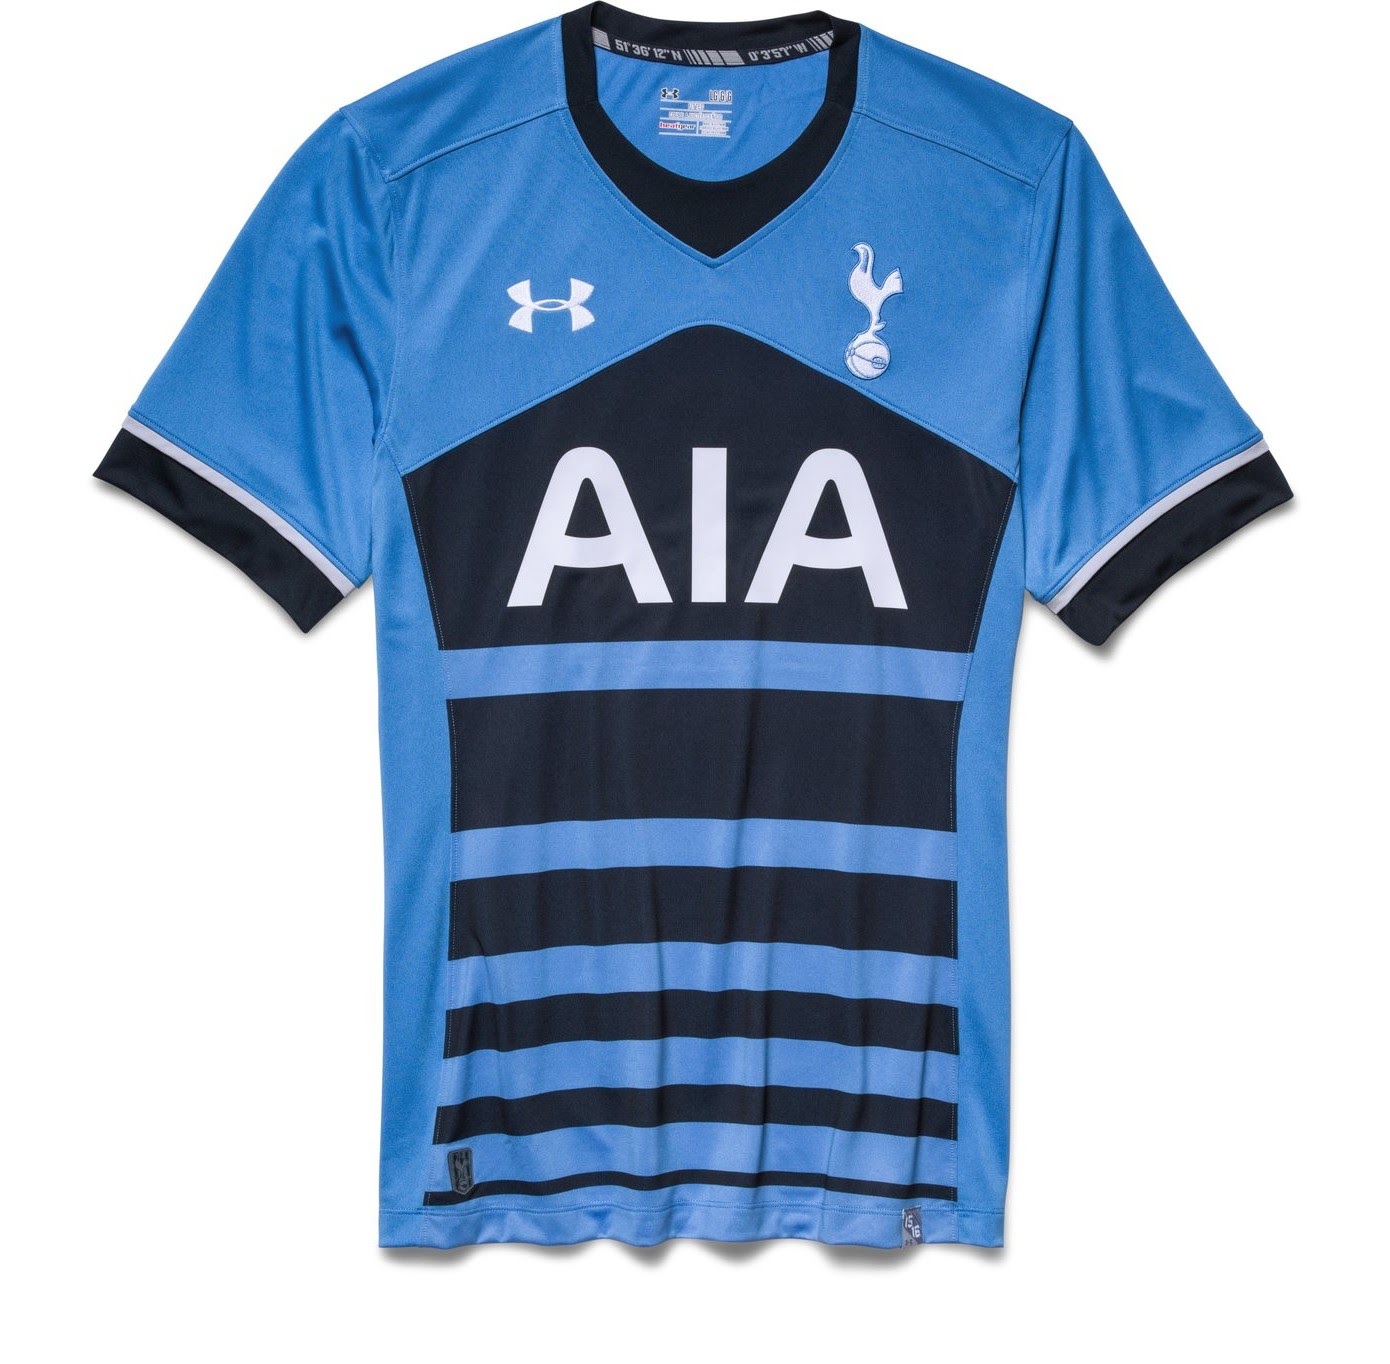 Tuyển tập áo đấu của CLB Tottenham trong các mùa giải gần đây 3